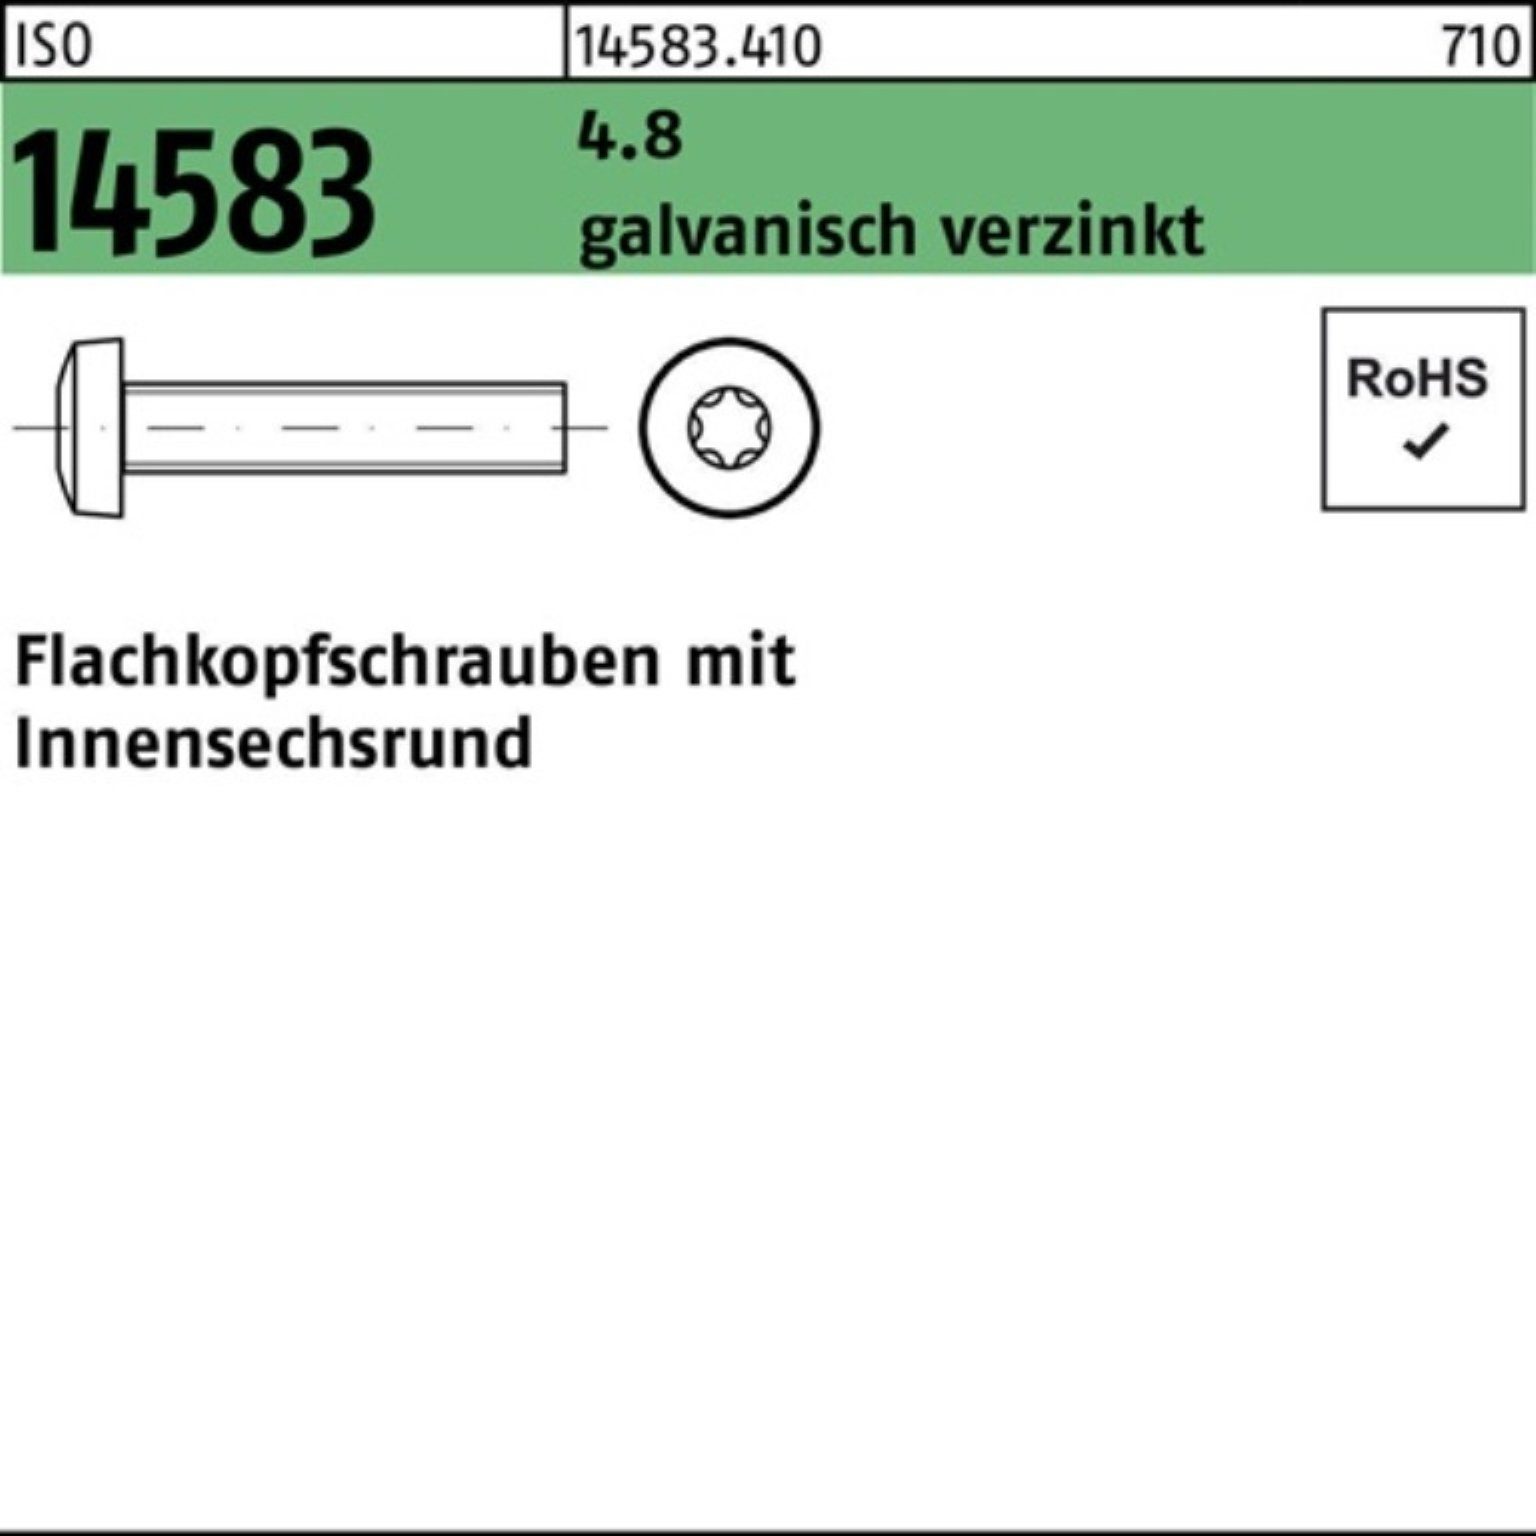 Pack M5x6 14583 2000St Schraube 2000er ISR Reyher 4.8 galv.verz. ISO Flachkopfschraube